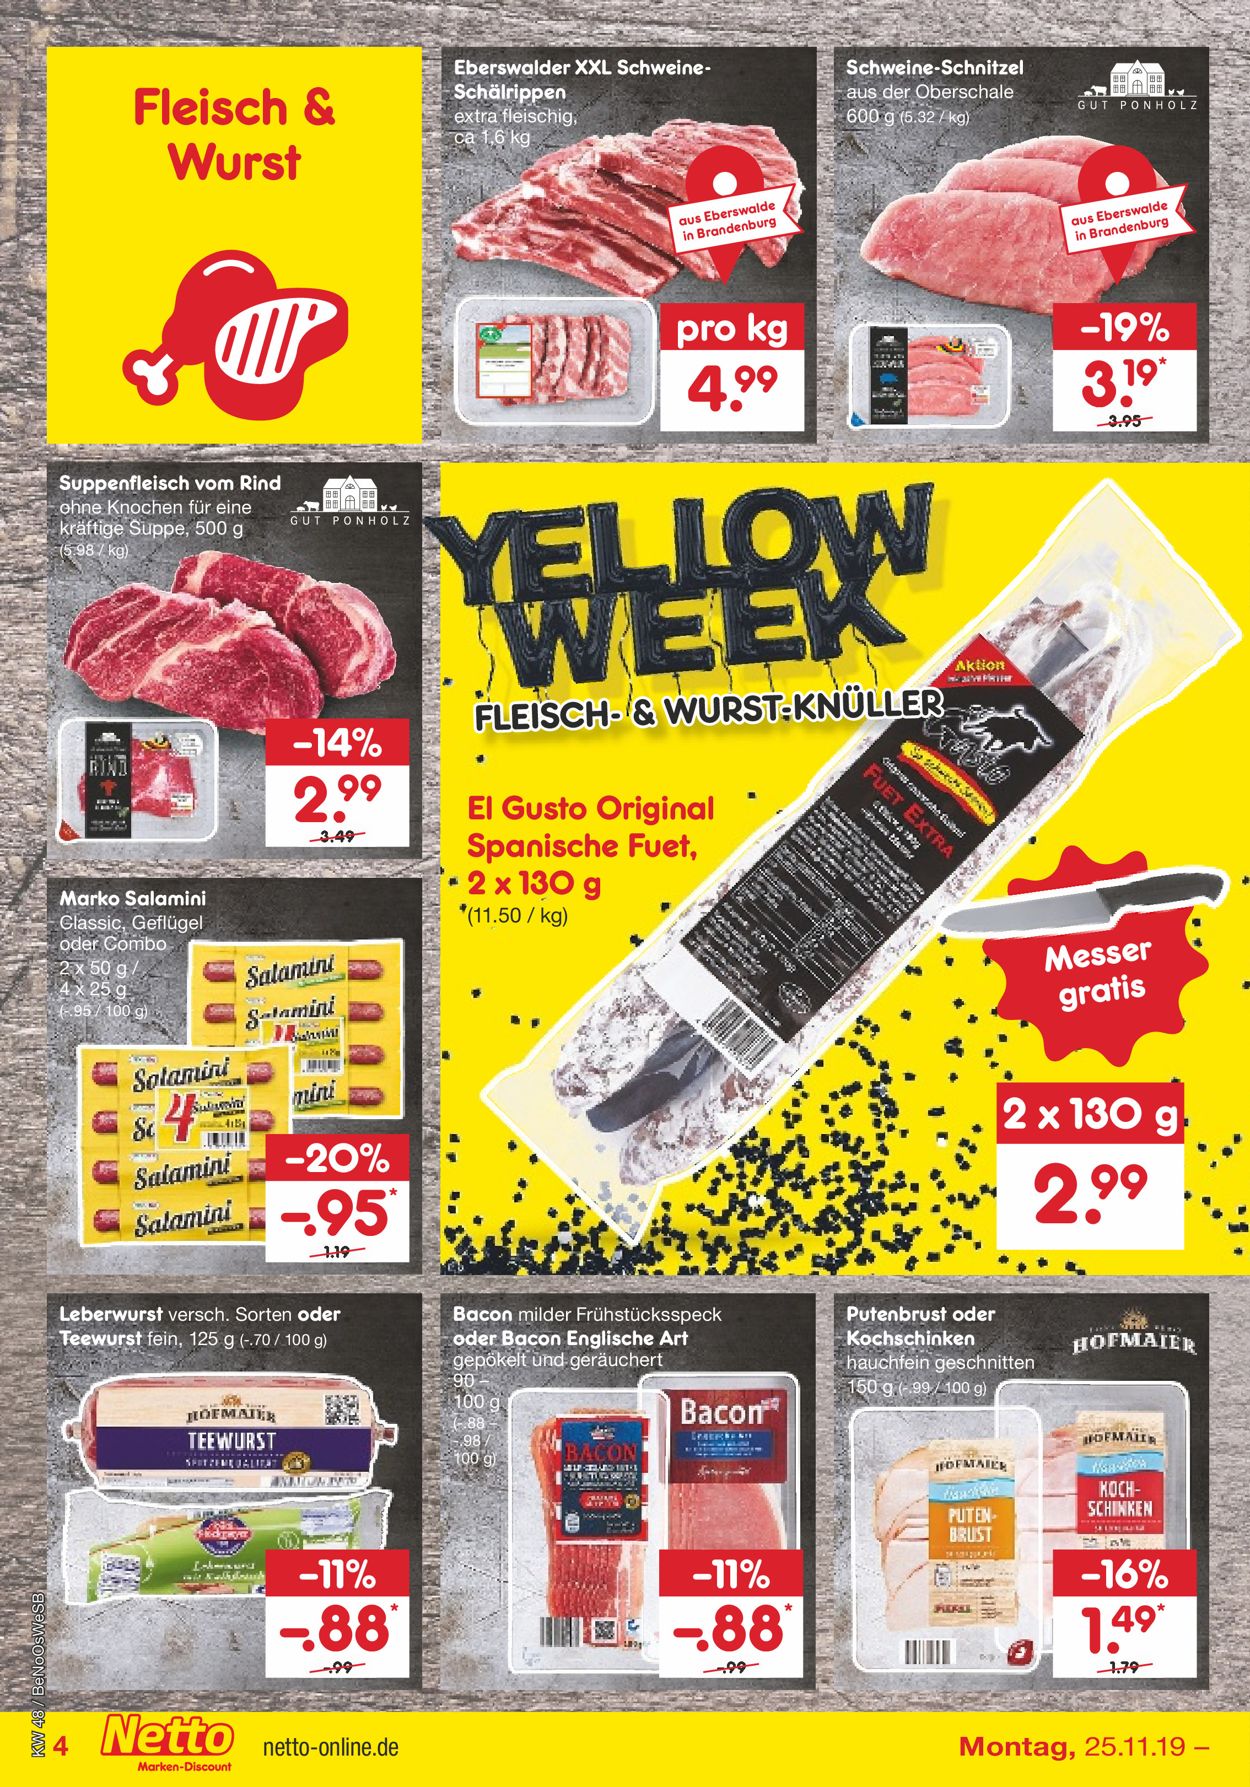 Netto Marken-Discount - Yellow Week 2019 Prospekt - Aktuell vom 25.11-30.11.2019 (Seite 8)